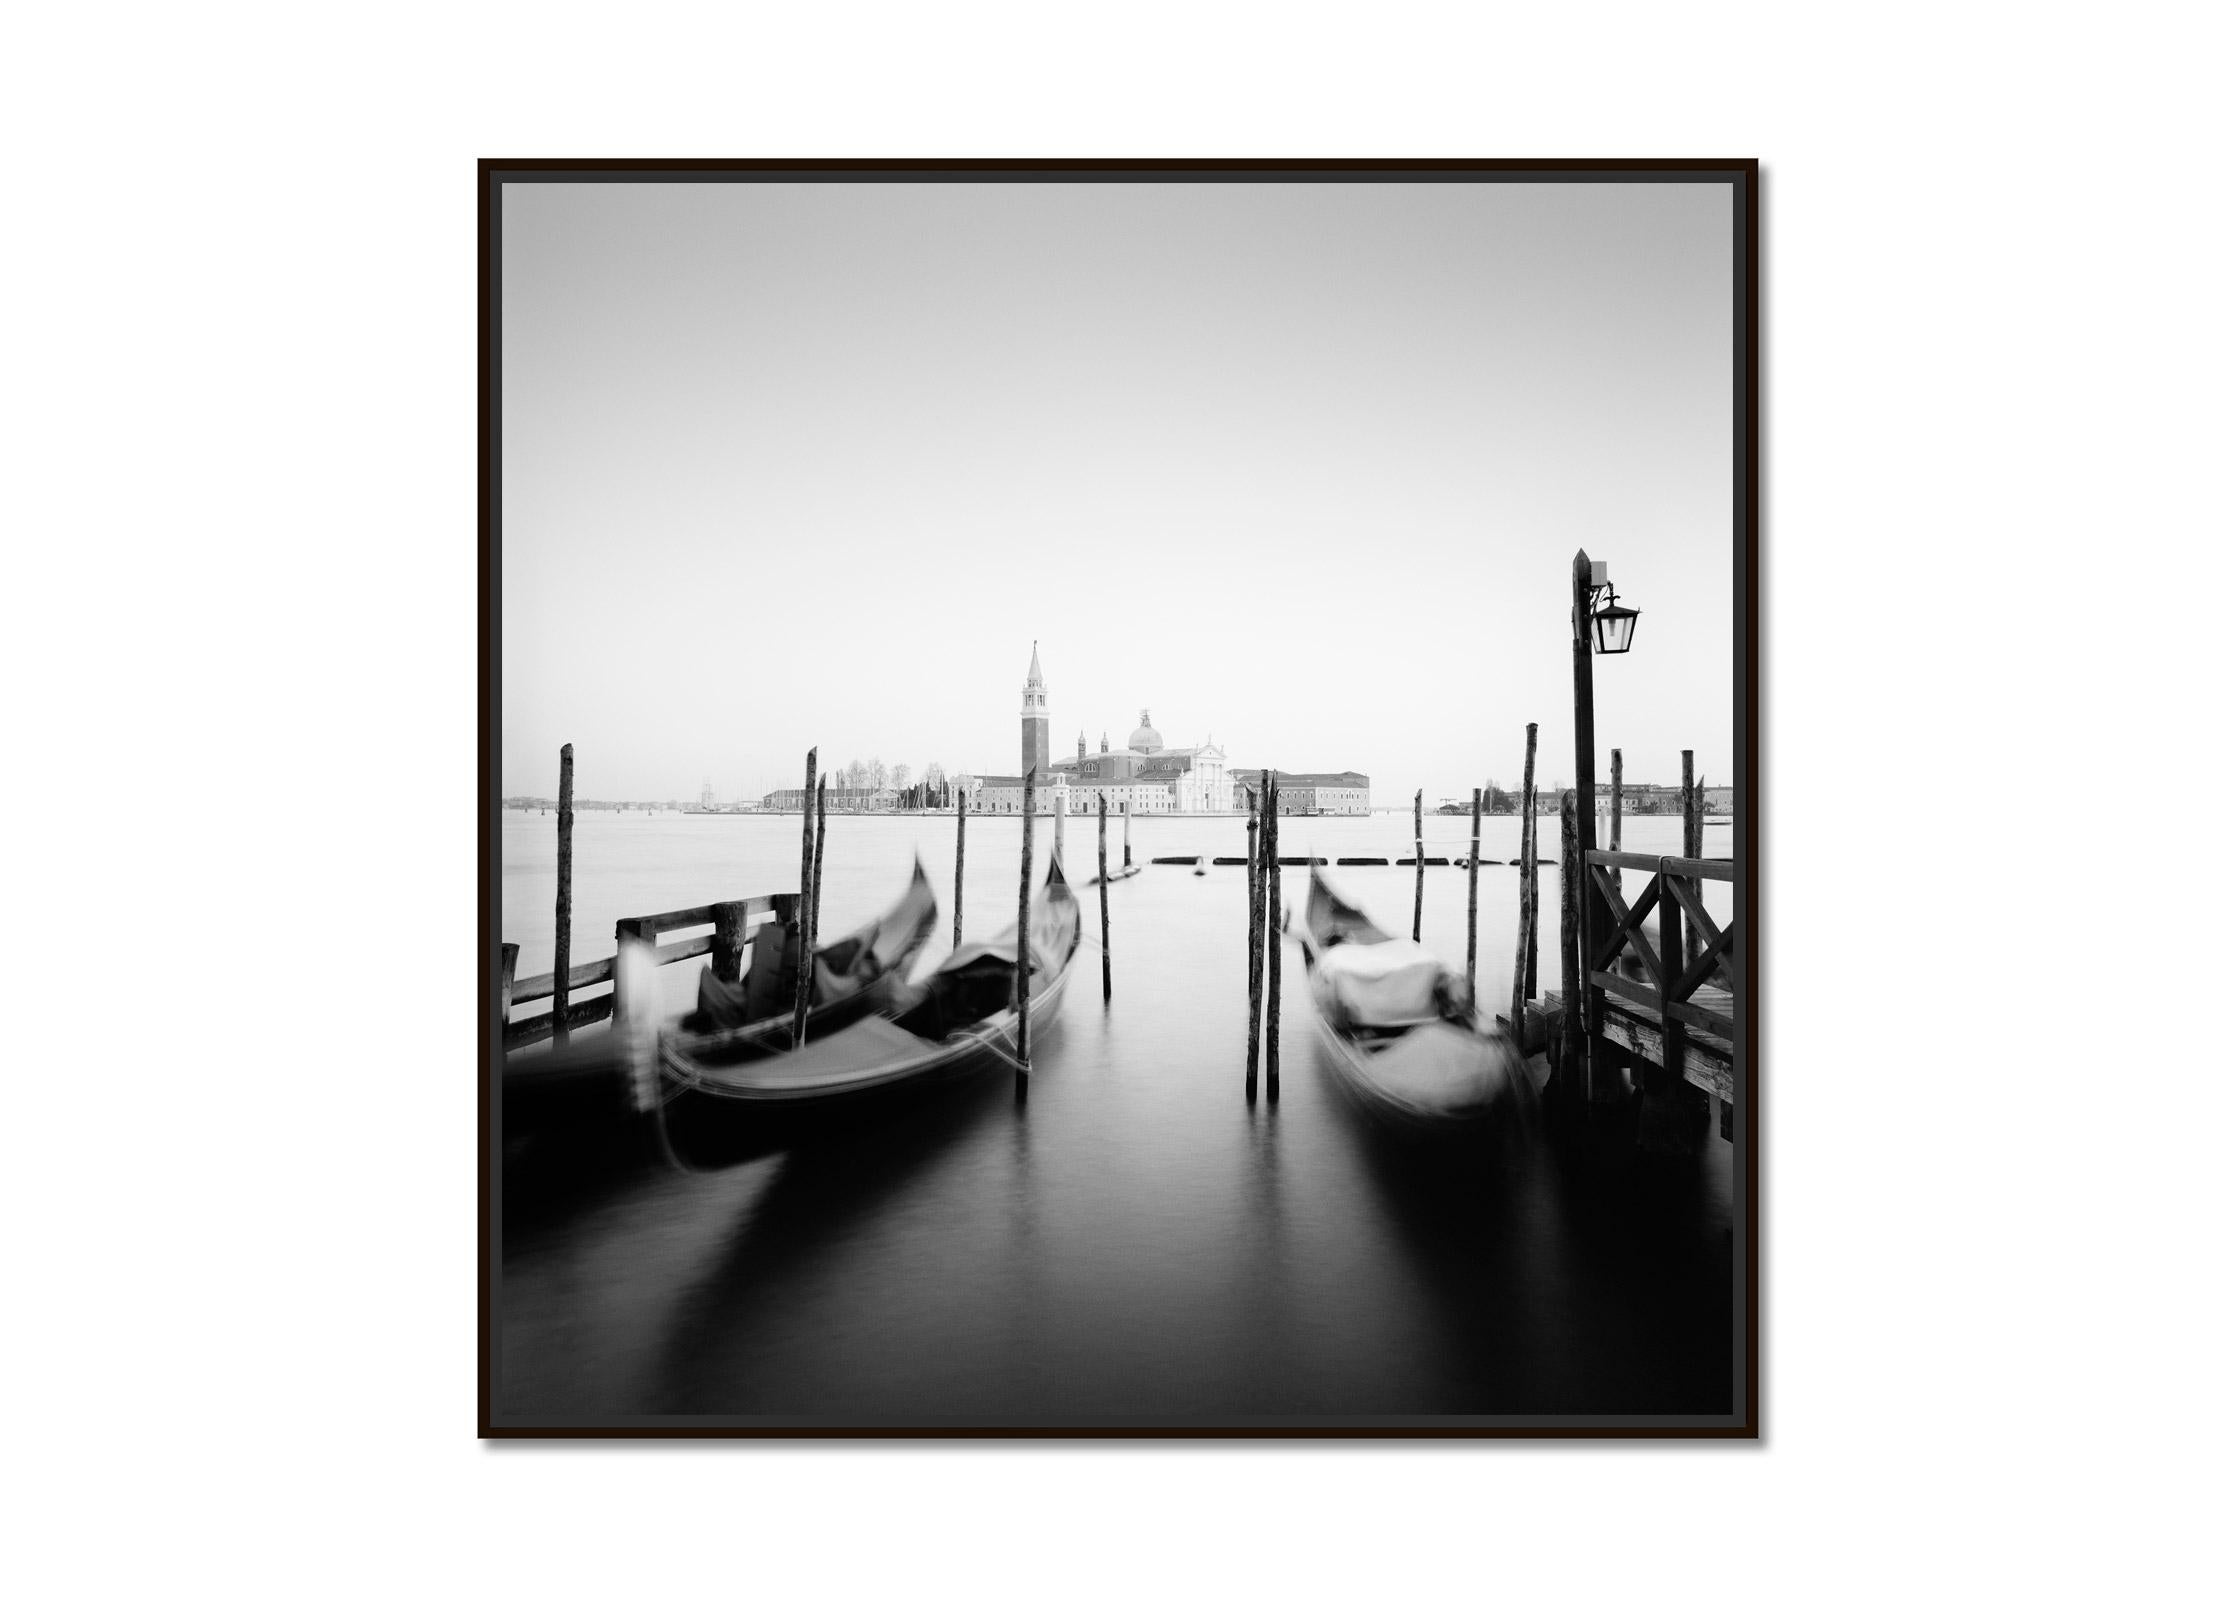 Santa Maria della Salute, Gondola, Venice, black and white cityscape photography - Photograph by Gerald Berghammer